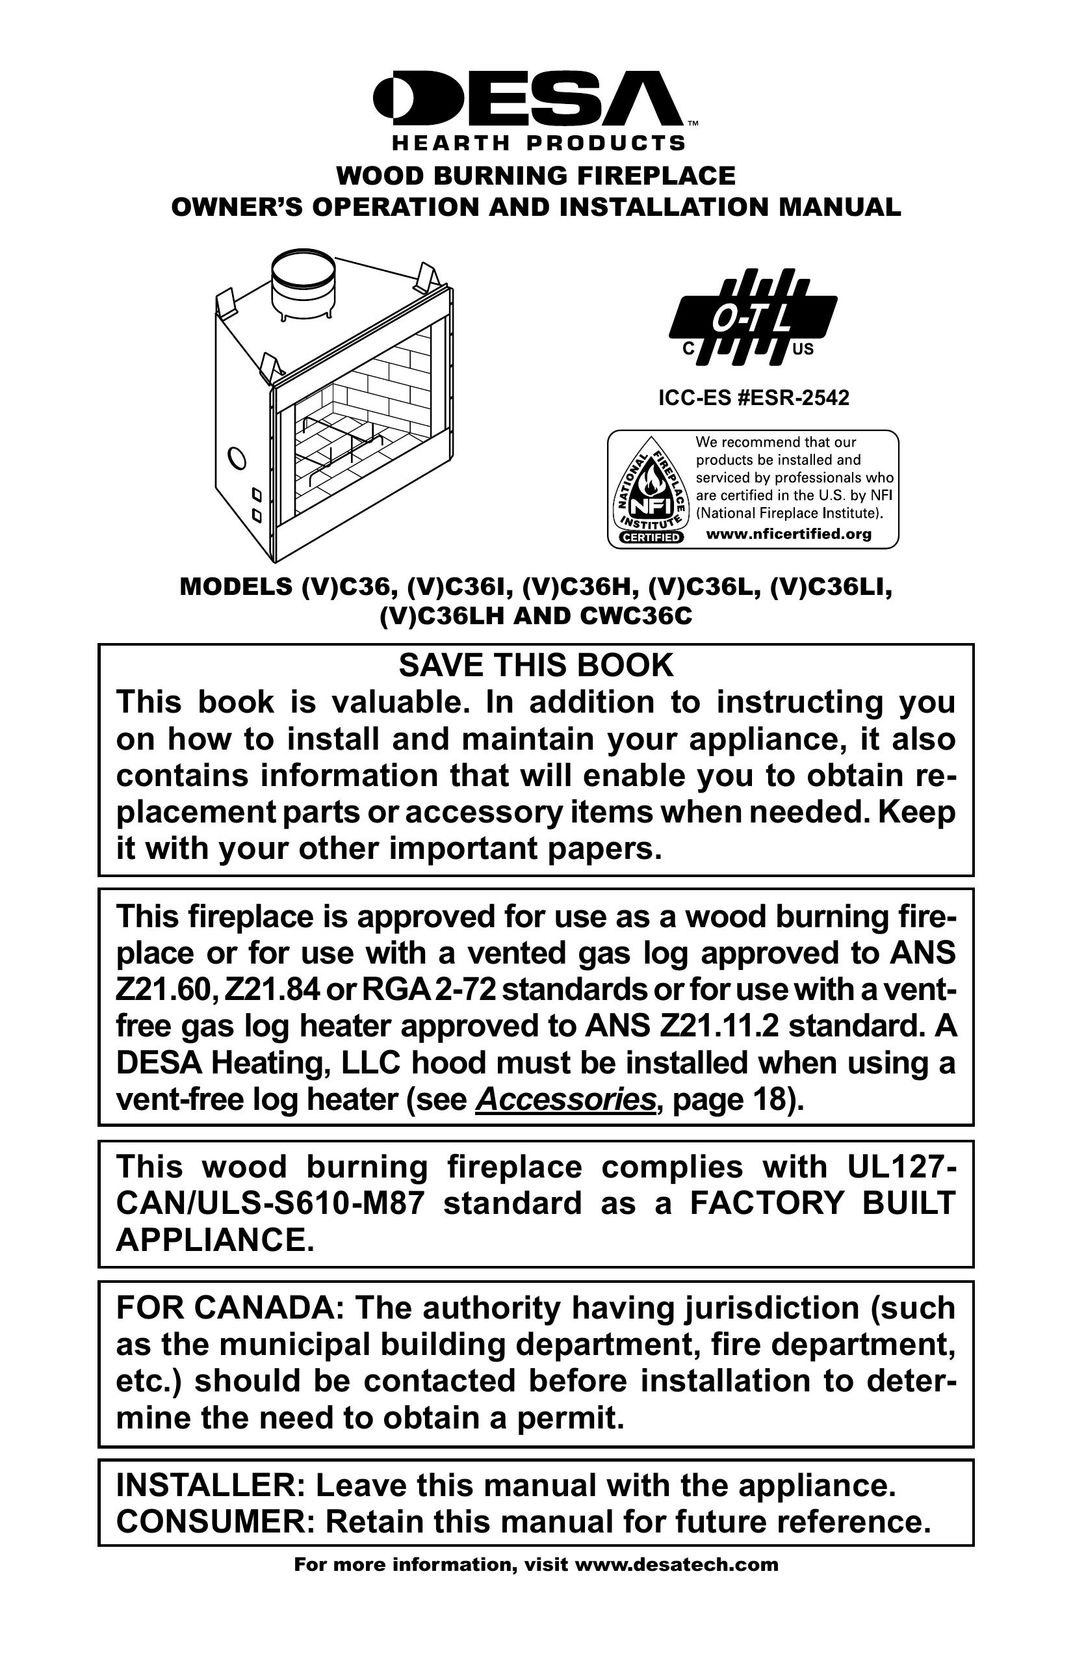 Desa (V)C36L Indoor Fireplace User Manual